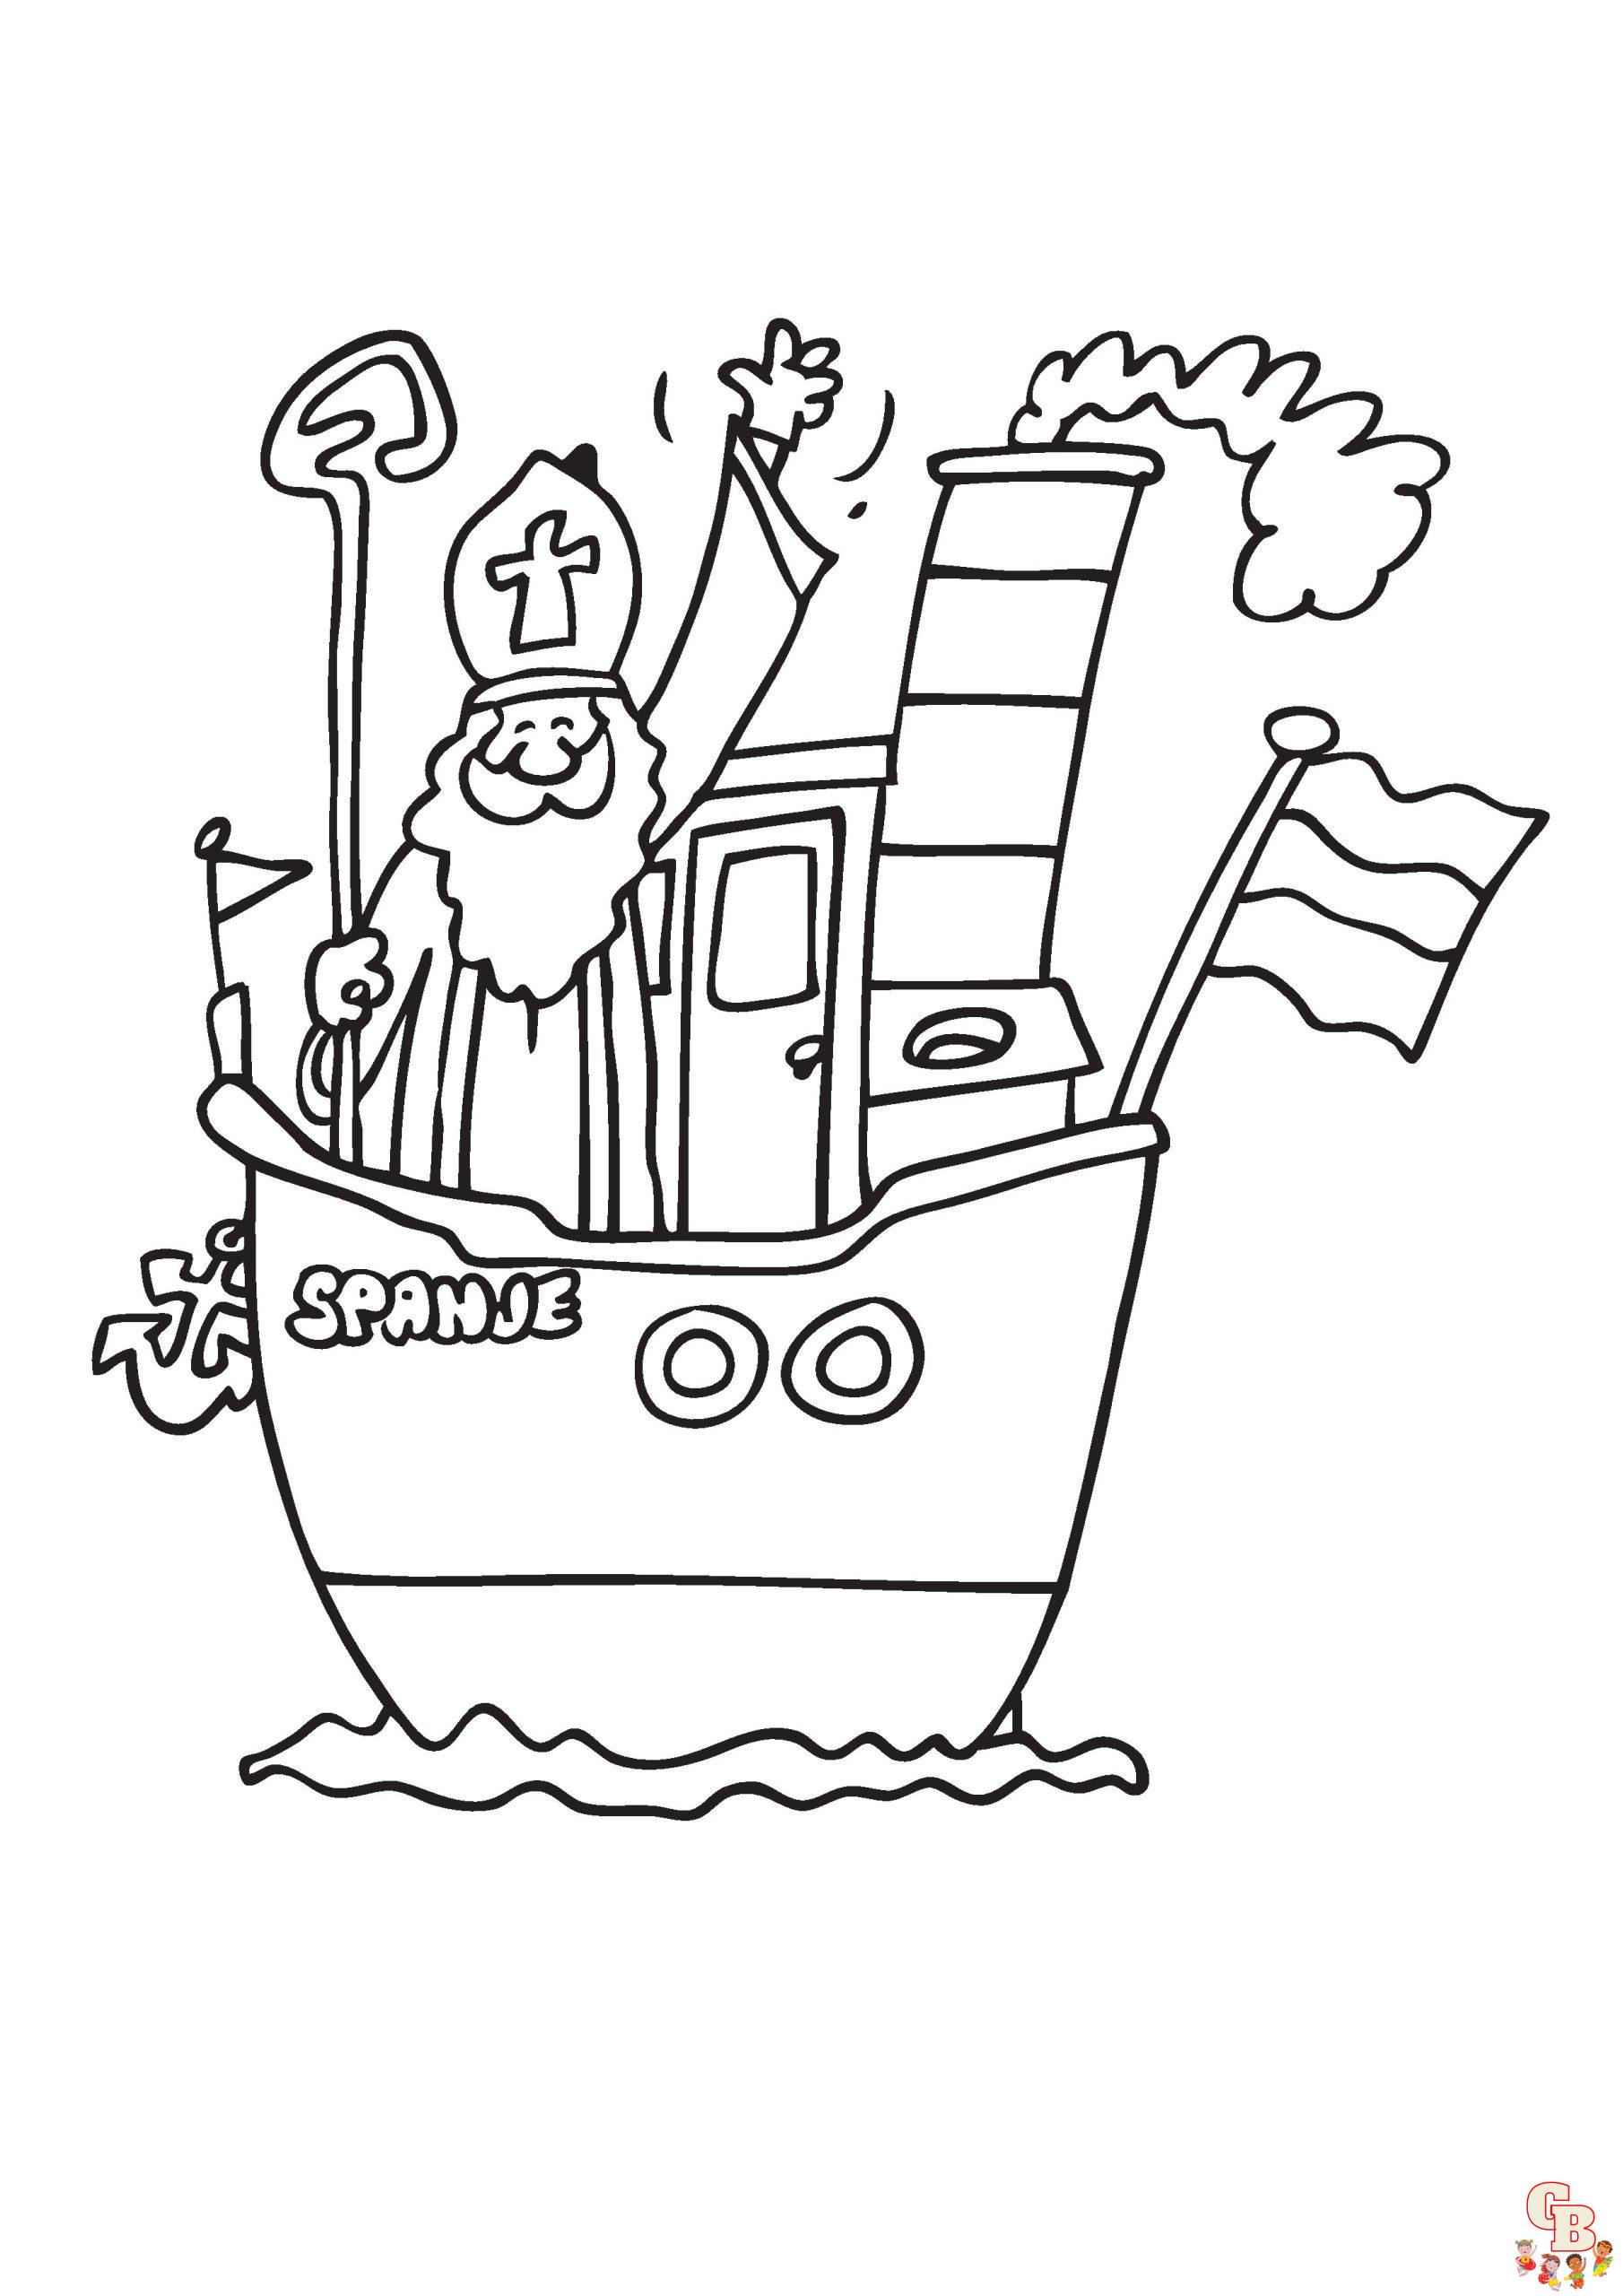 Sinterklaas Stoomboot Kleurplaat 4